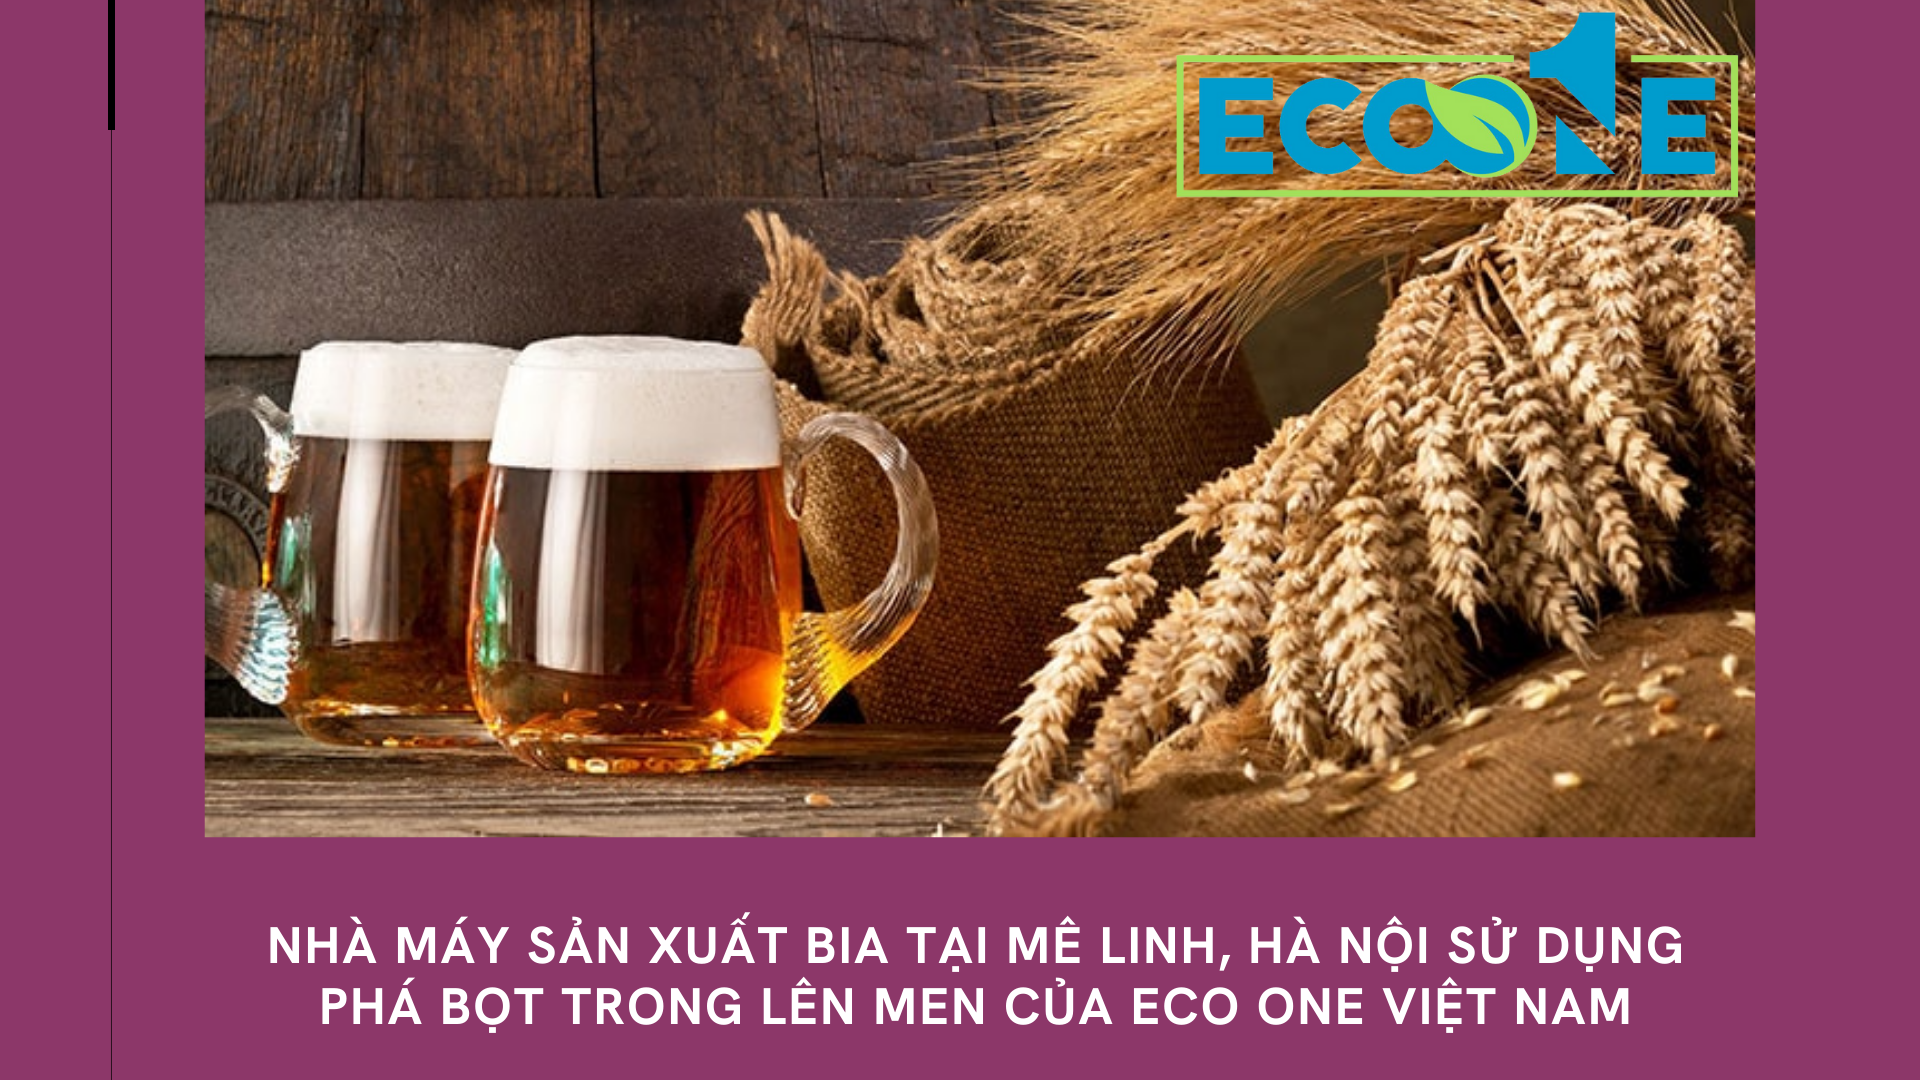 Nhà máy sản xuất bia tại Mê Linh, hà nội sử dụng phá bọt trong lên men của Eco One việt nam